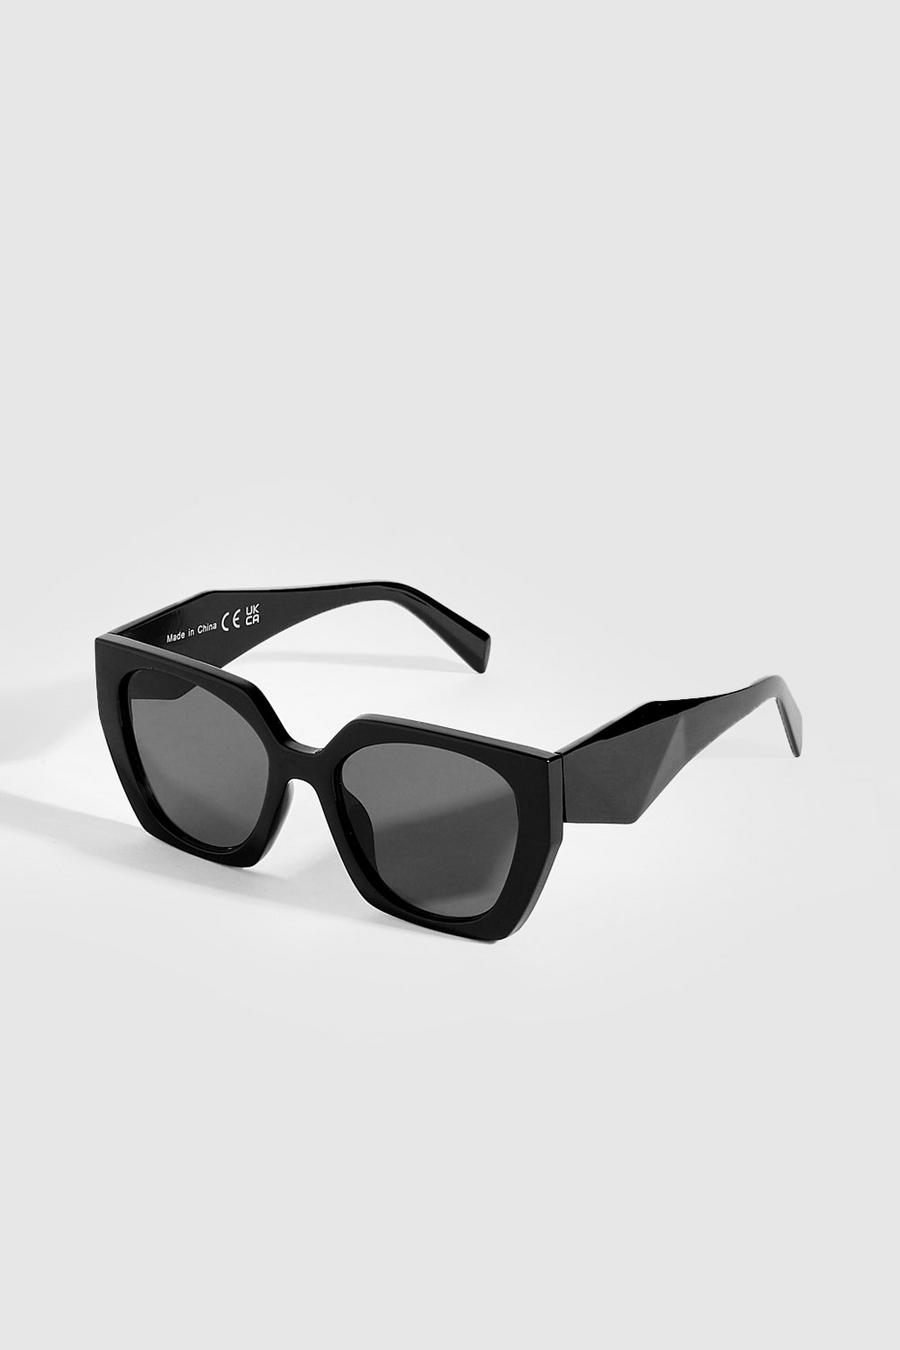 Oversized Angular Black Sunglasses image number 1